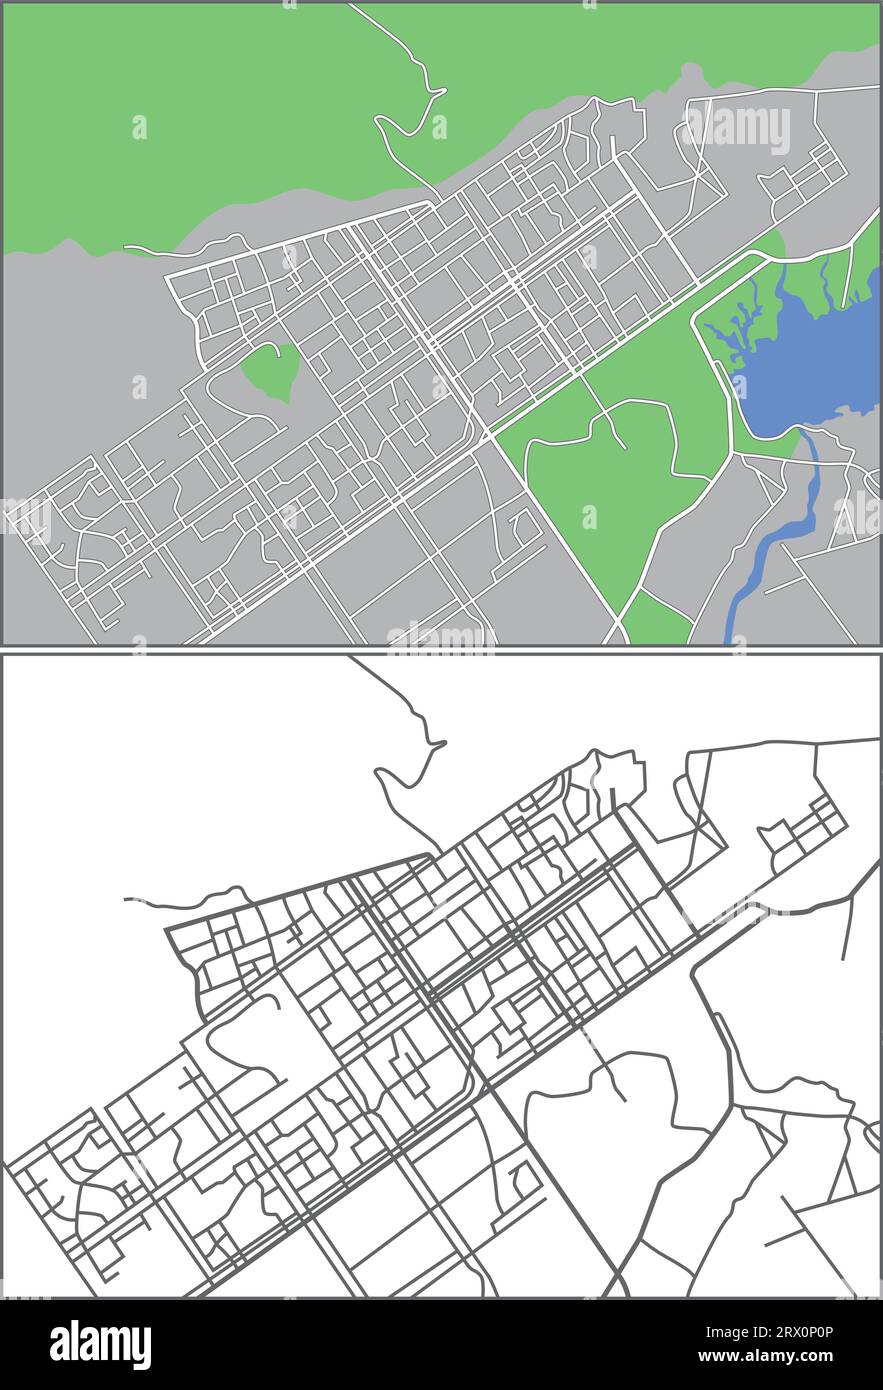 streetmap vectoriel éditable en couches d'Islamabad, Pakistan, qui contient des lignes et des formes colorées pour les terres, les routes, les rivières et les parcs. Illustration de Vecteur